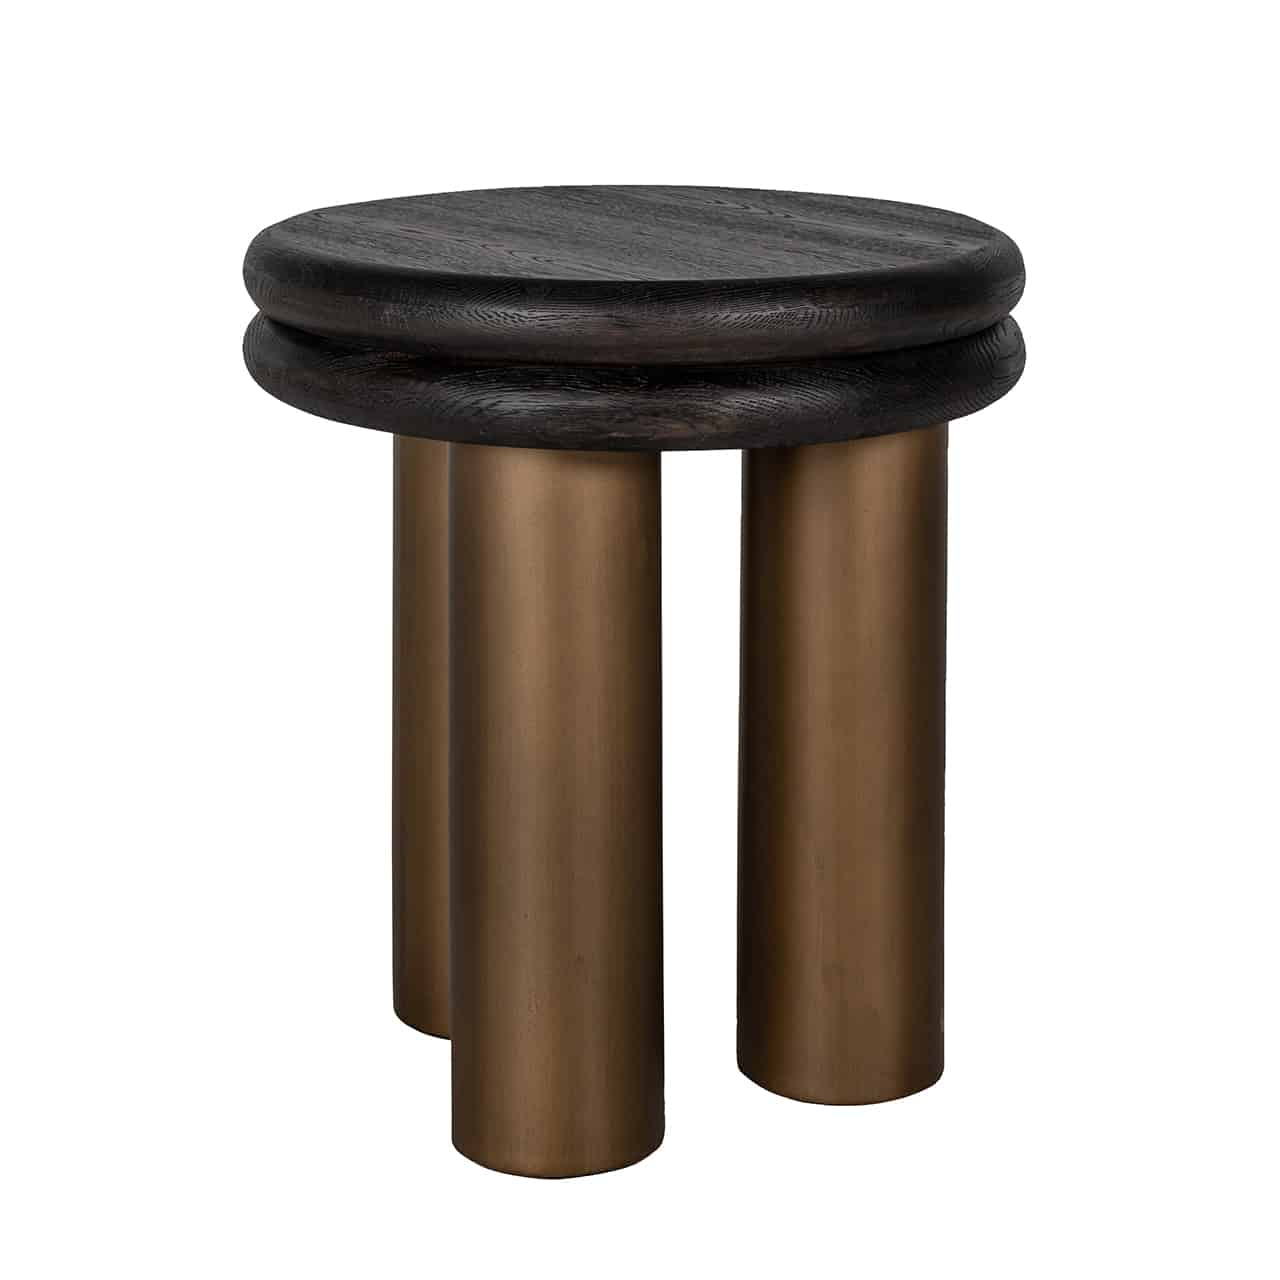 Runder Beistelltisch bestehend aus drei dicken zylinderförmigen Beinen in Gold, darauf zwei schwarze Holzplatten mit abgerundeten Kanten.